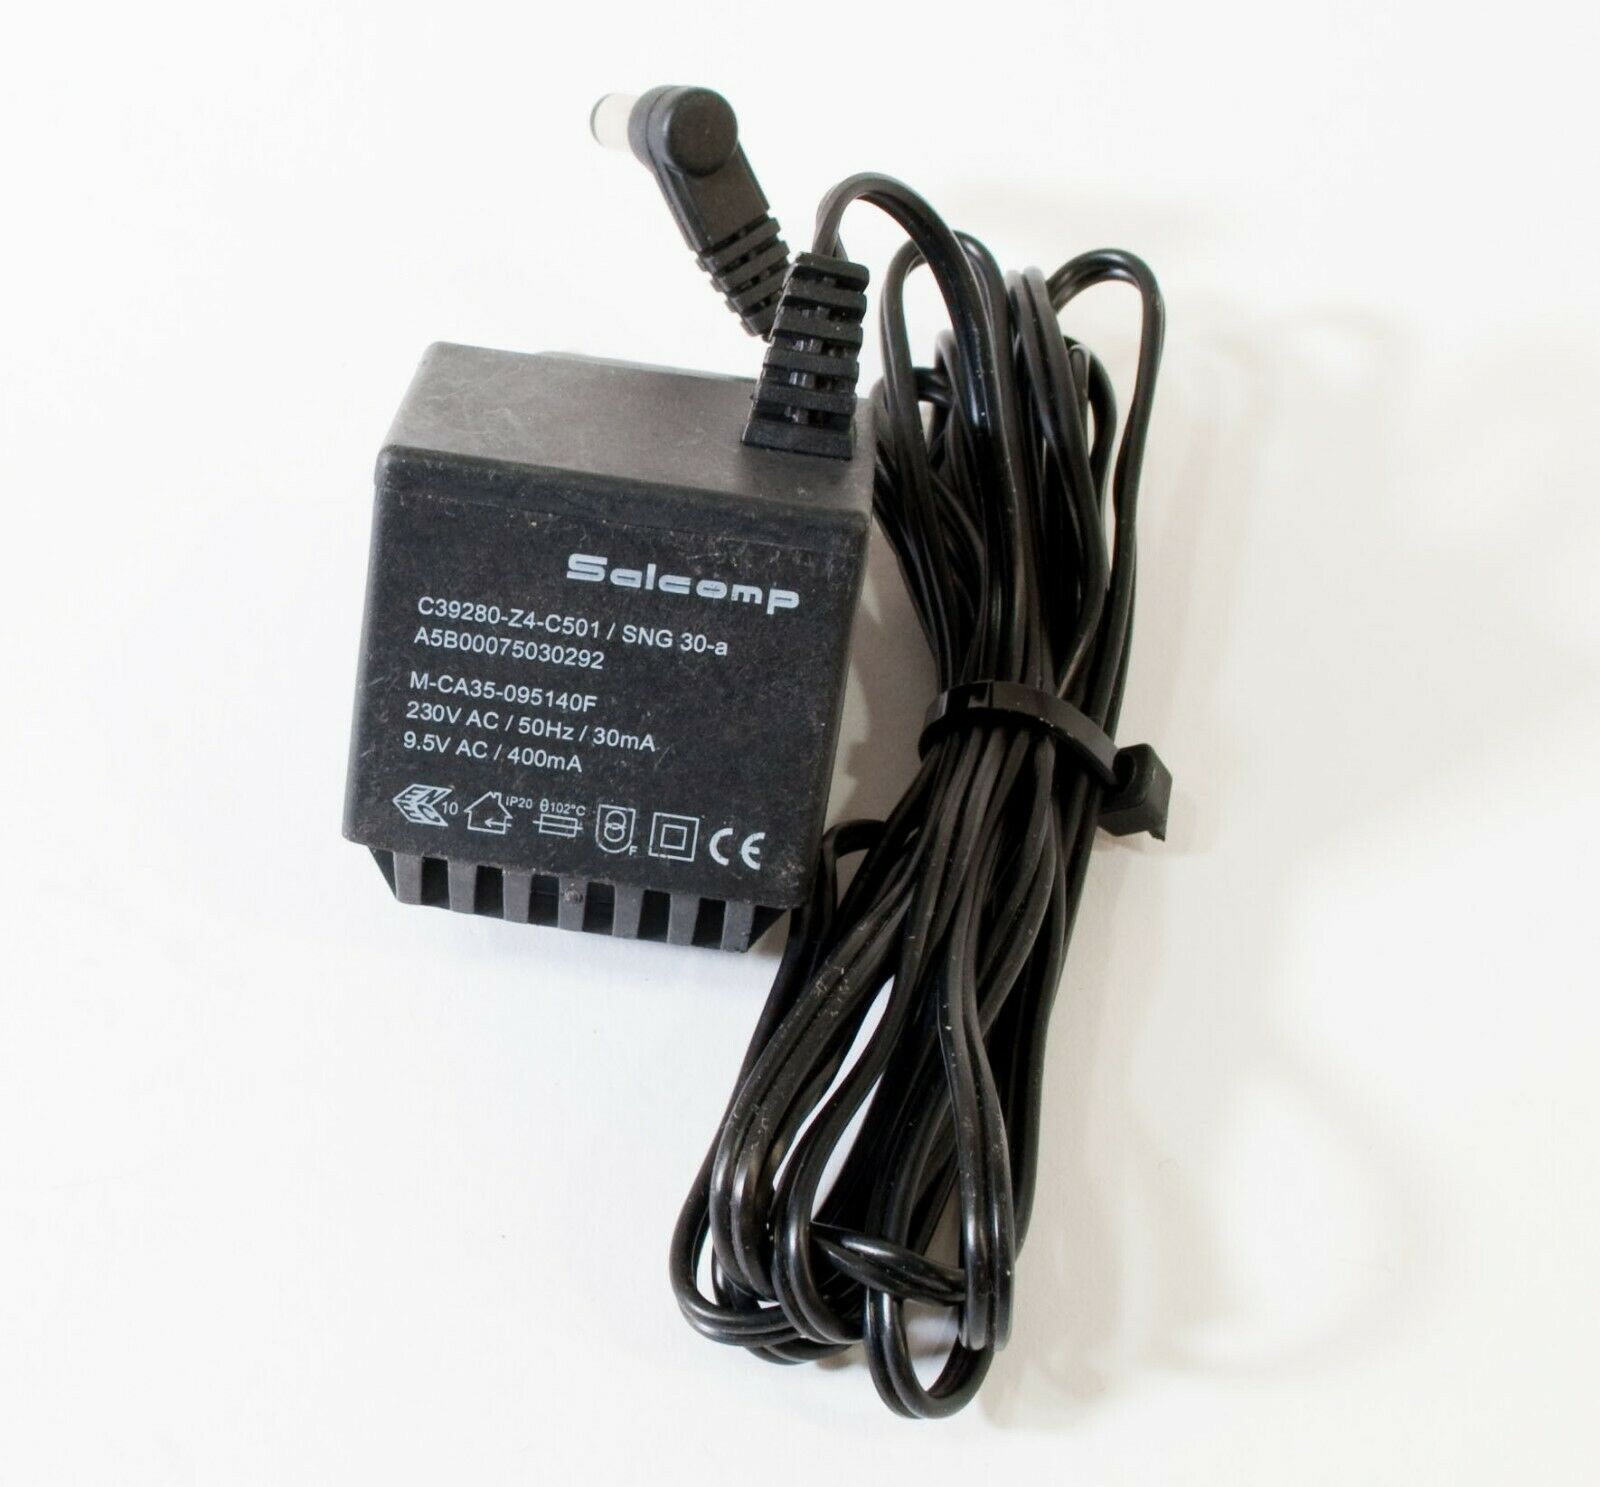 Salcomp M-CA35-095140F AC Adapter 9.5V 400mA Original Power Supply Europlug Output Current: 400 m